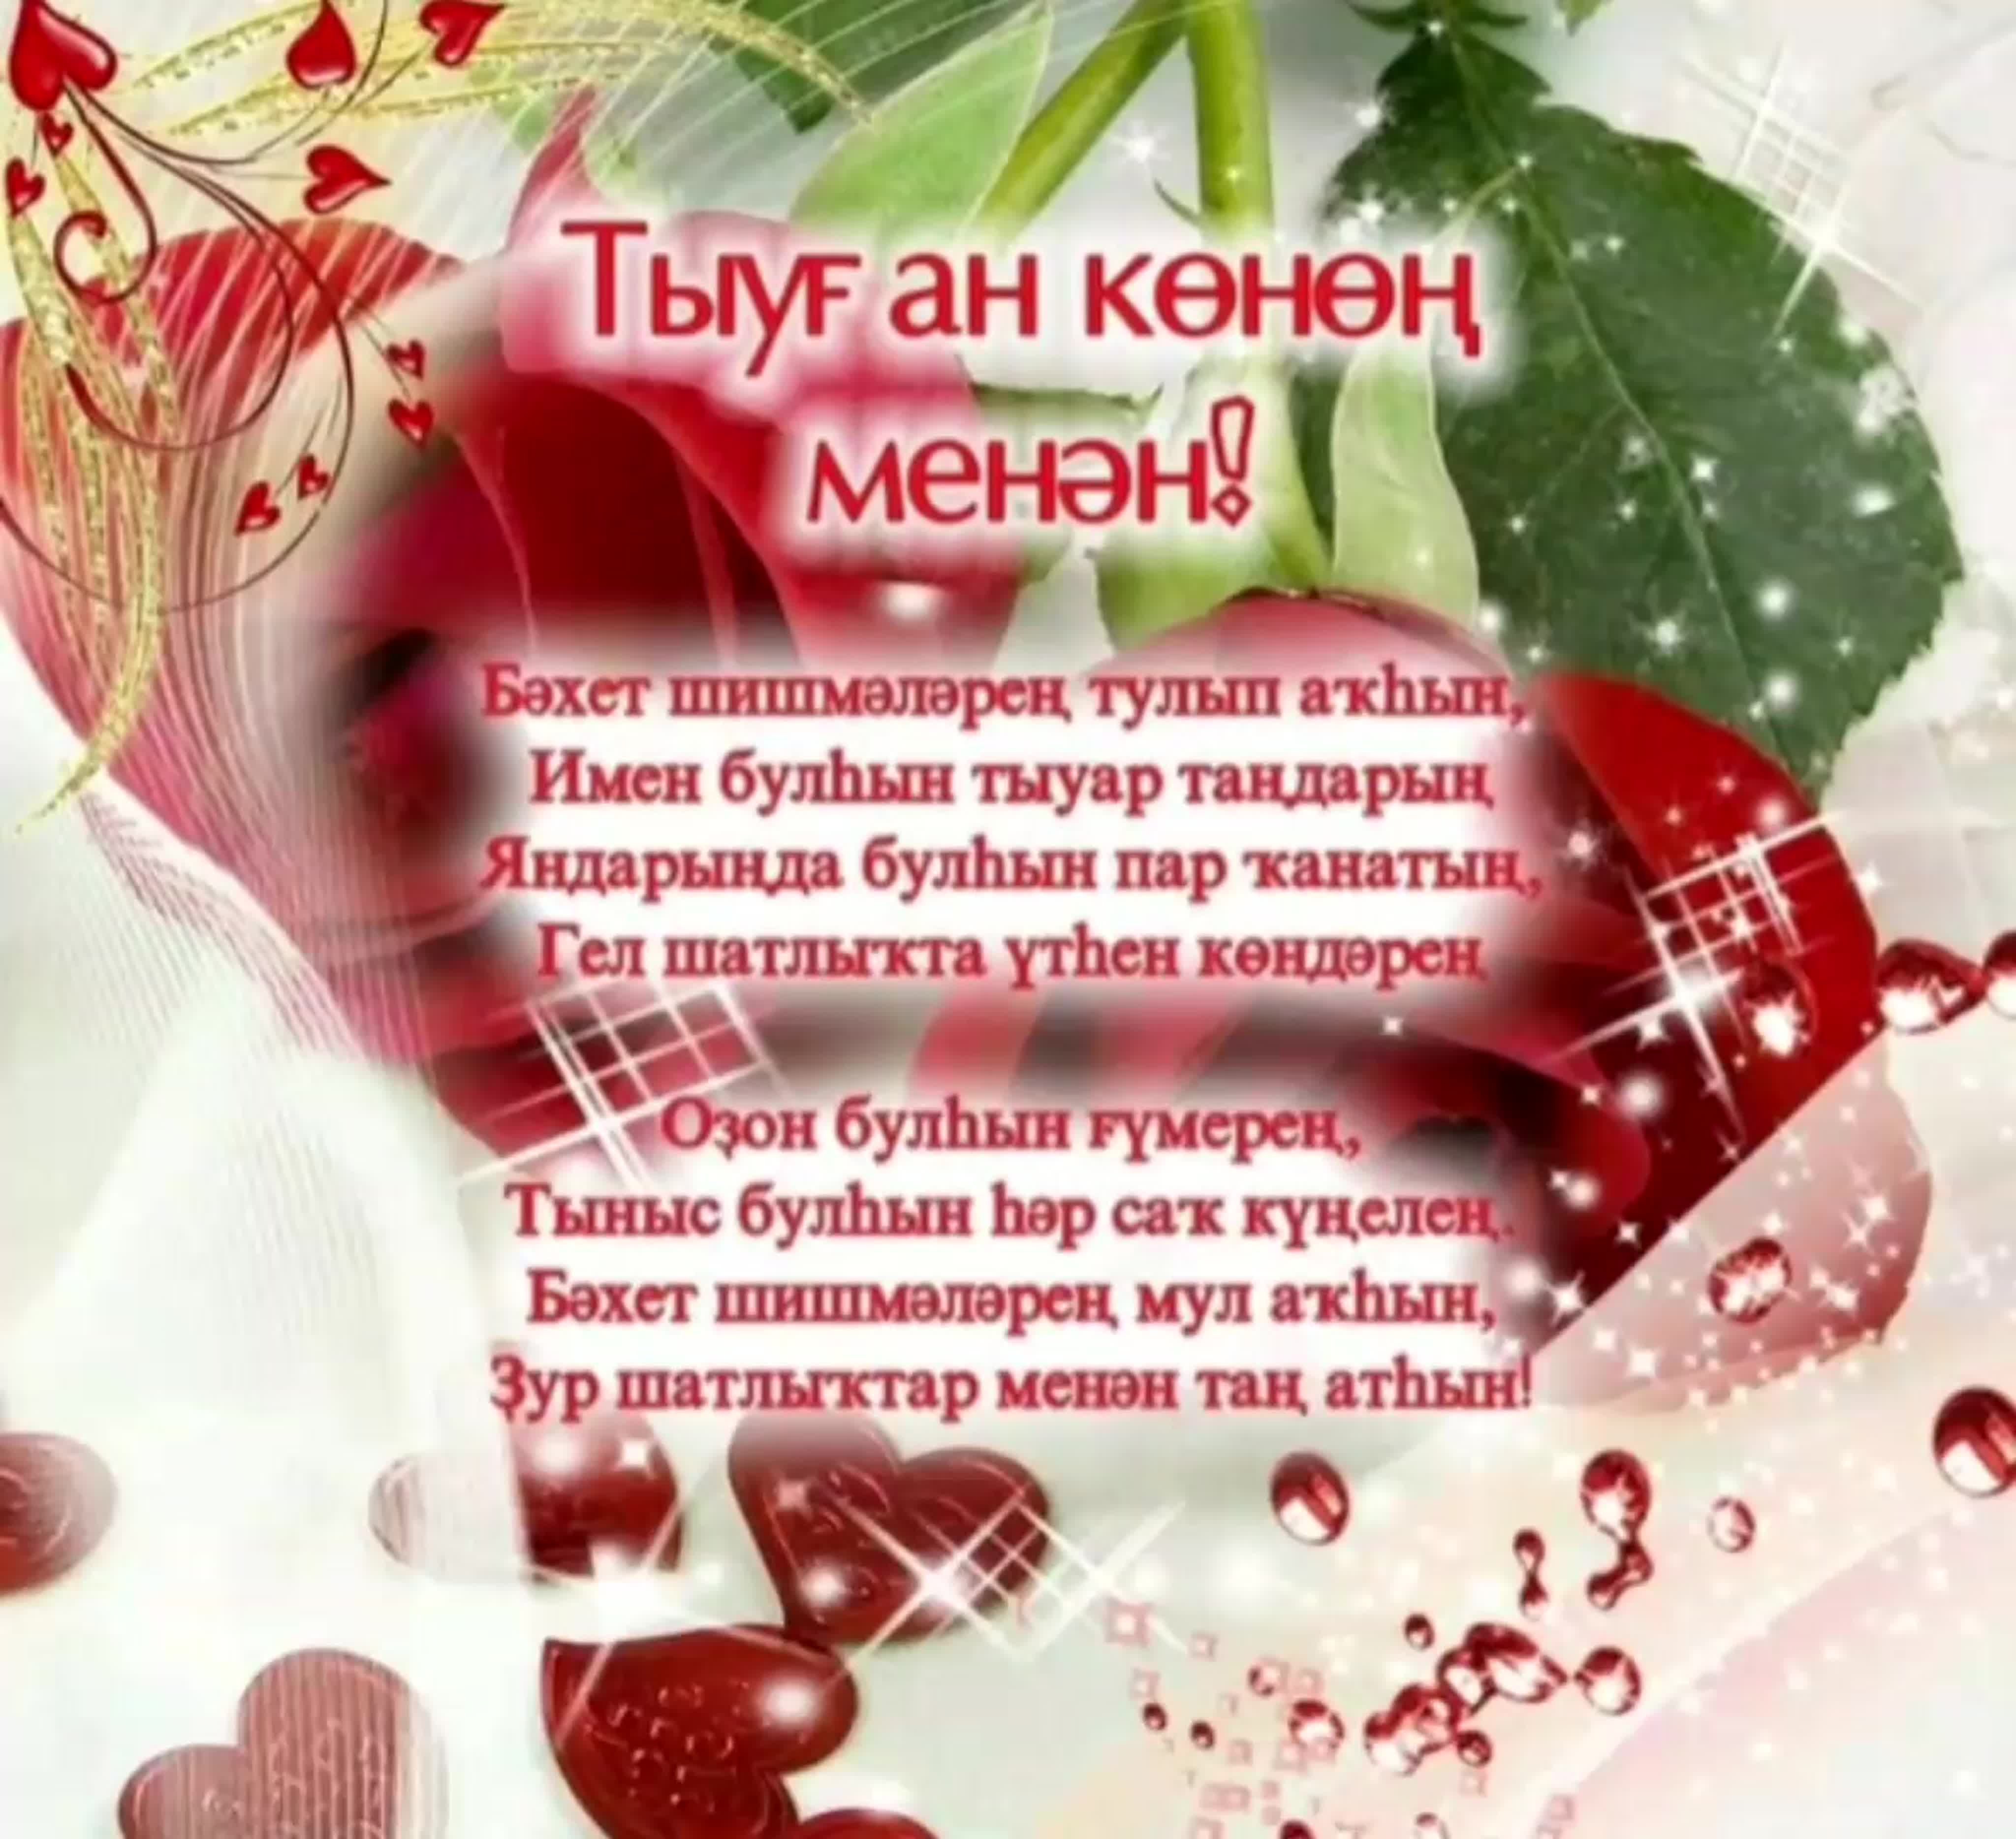 Поздравление с днем рождения на таджикском языке. Открытка с юбилеем на башкирском языке. Поздравления с днём рождения на башкирском языке. Поздравление с юбилеем на башкирском языке. Поздравления с днём на башкирском языке.